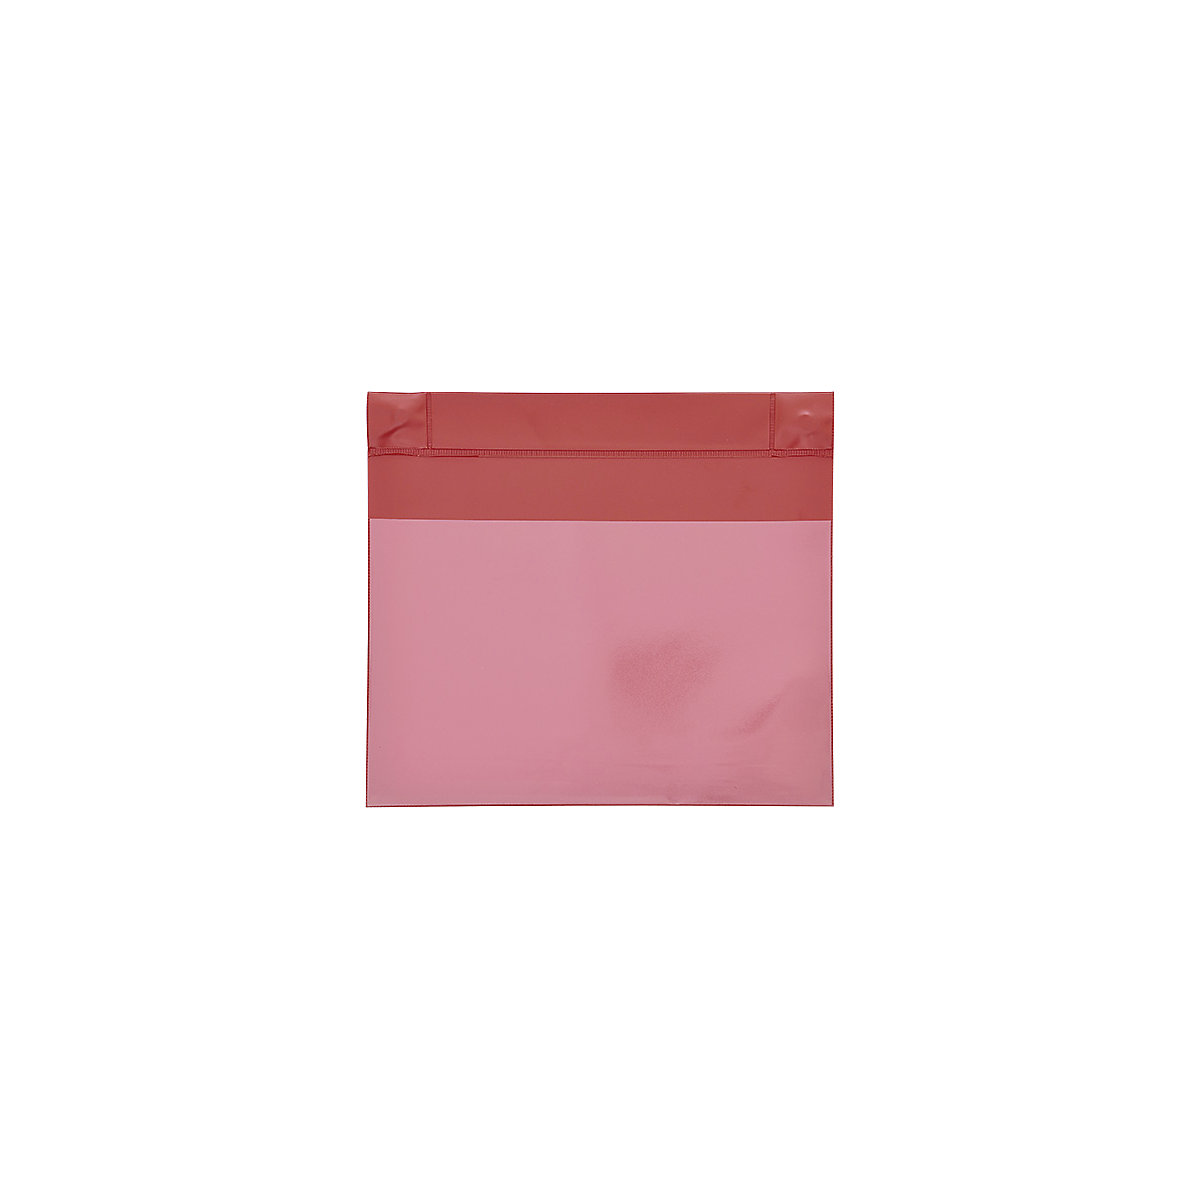 Magnetické tašky neodýmové, formát na šírku, OJ 25 ks, červená, DIN A6, od 1 OJ-7